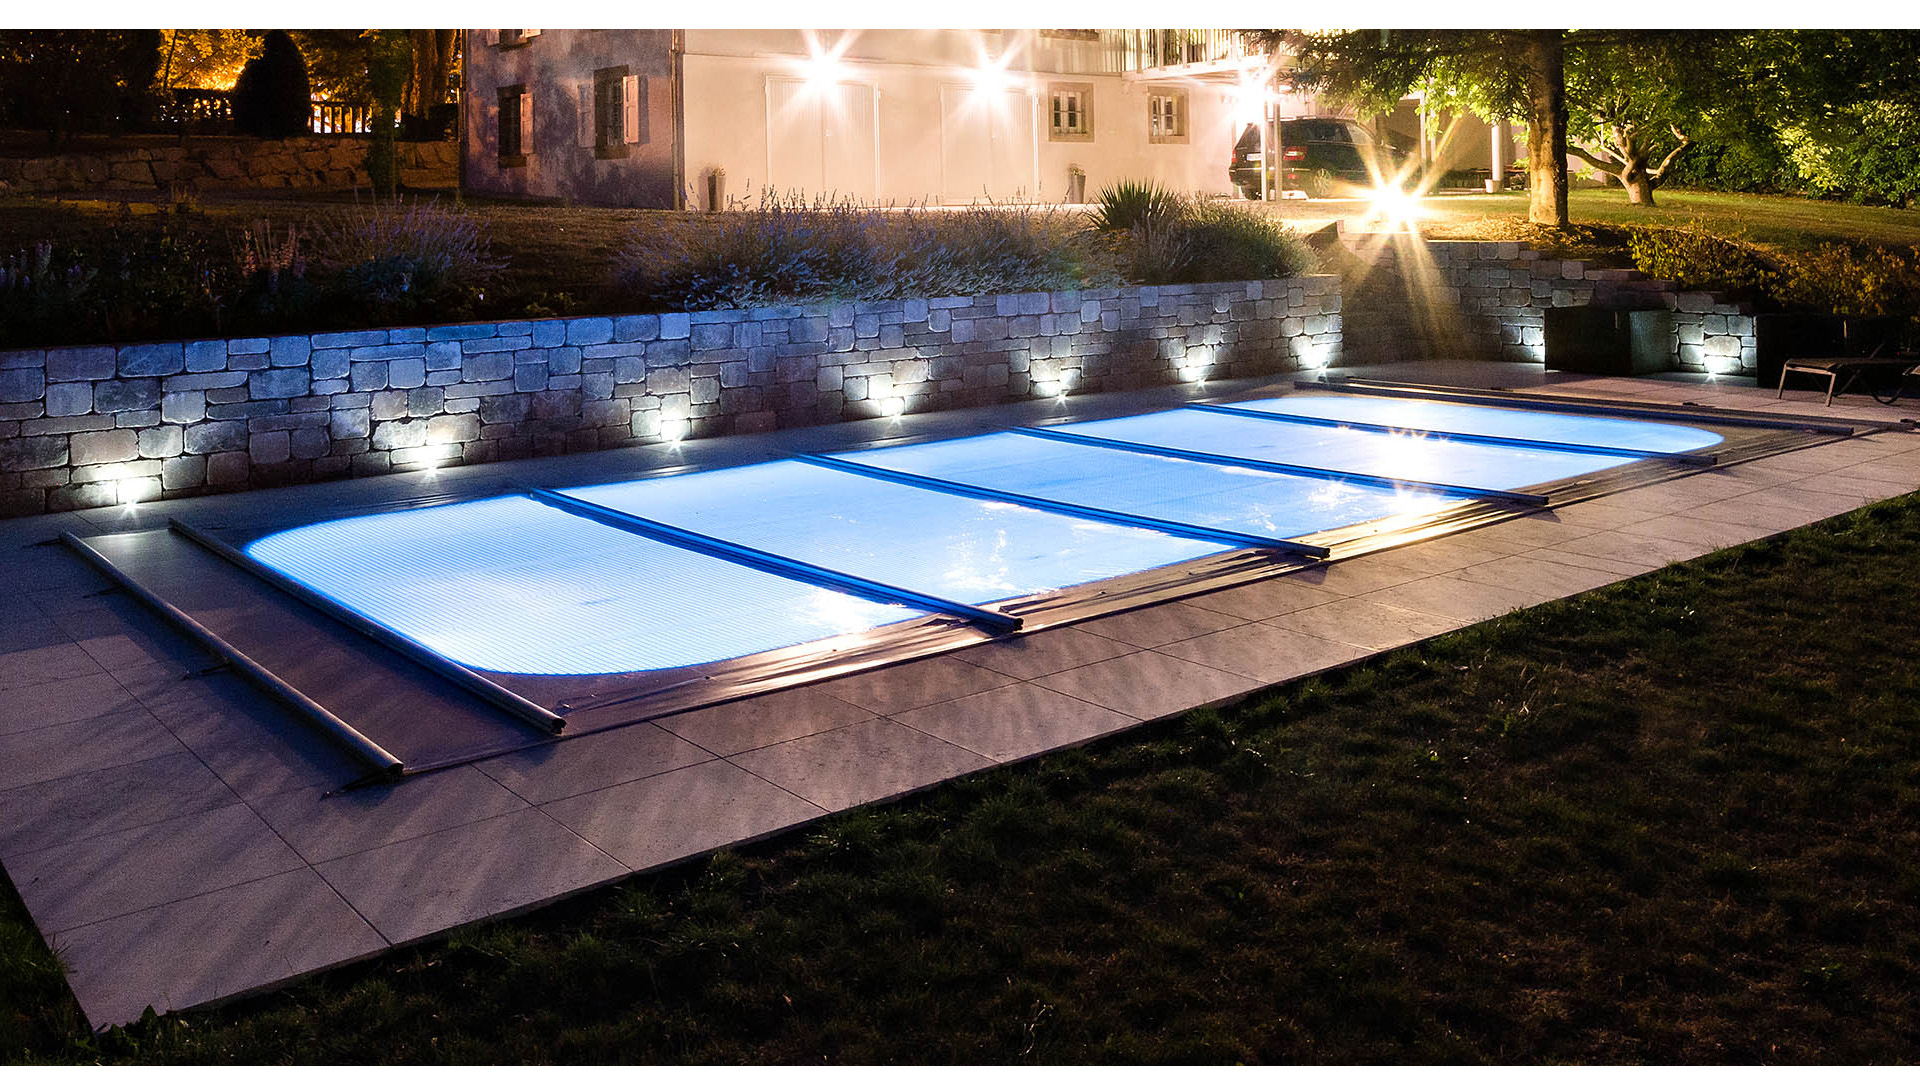 Kit solaire sur-mesure pour chauffer votre piscine gratuitement !